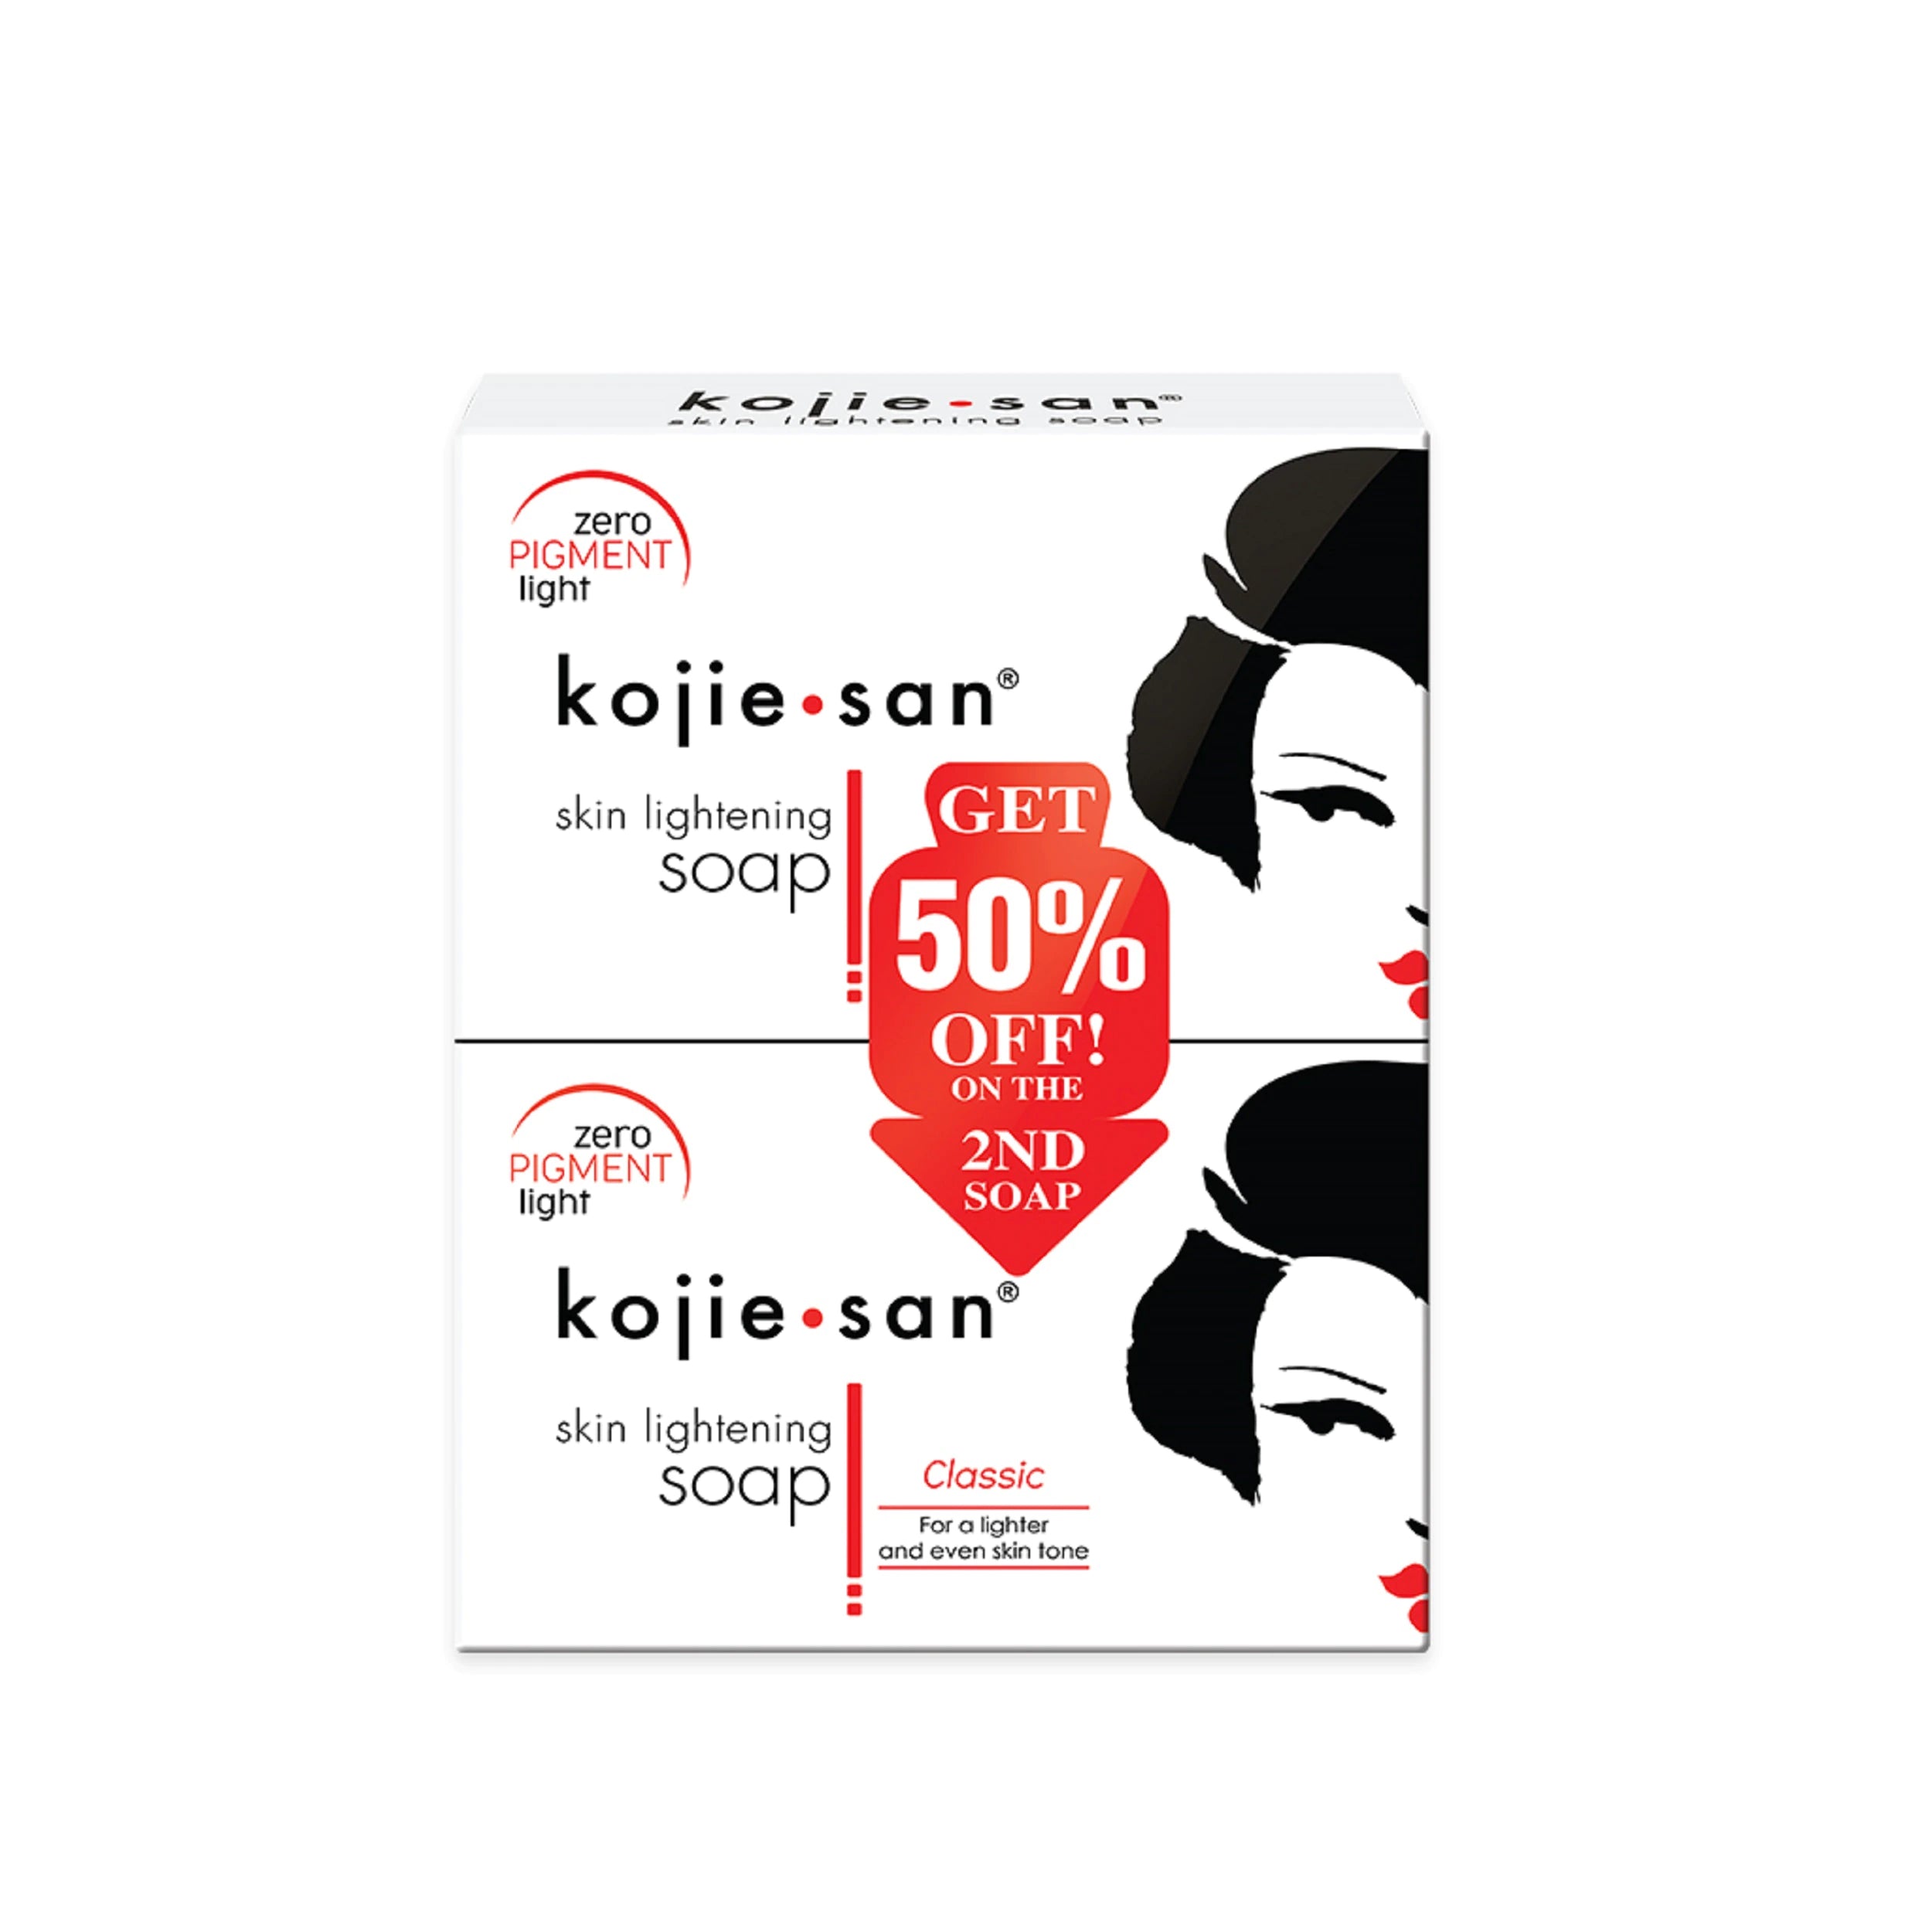 Kojie San Crème éclaircissante pour le visage – Kojie San France™